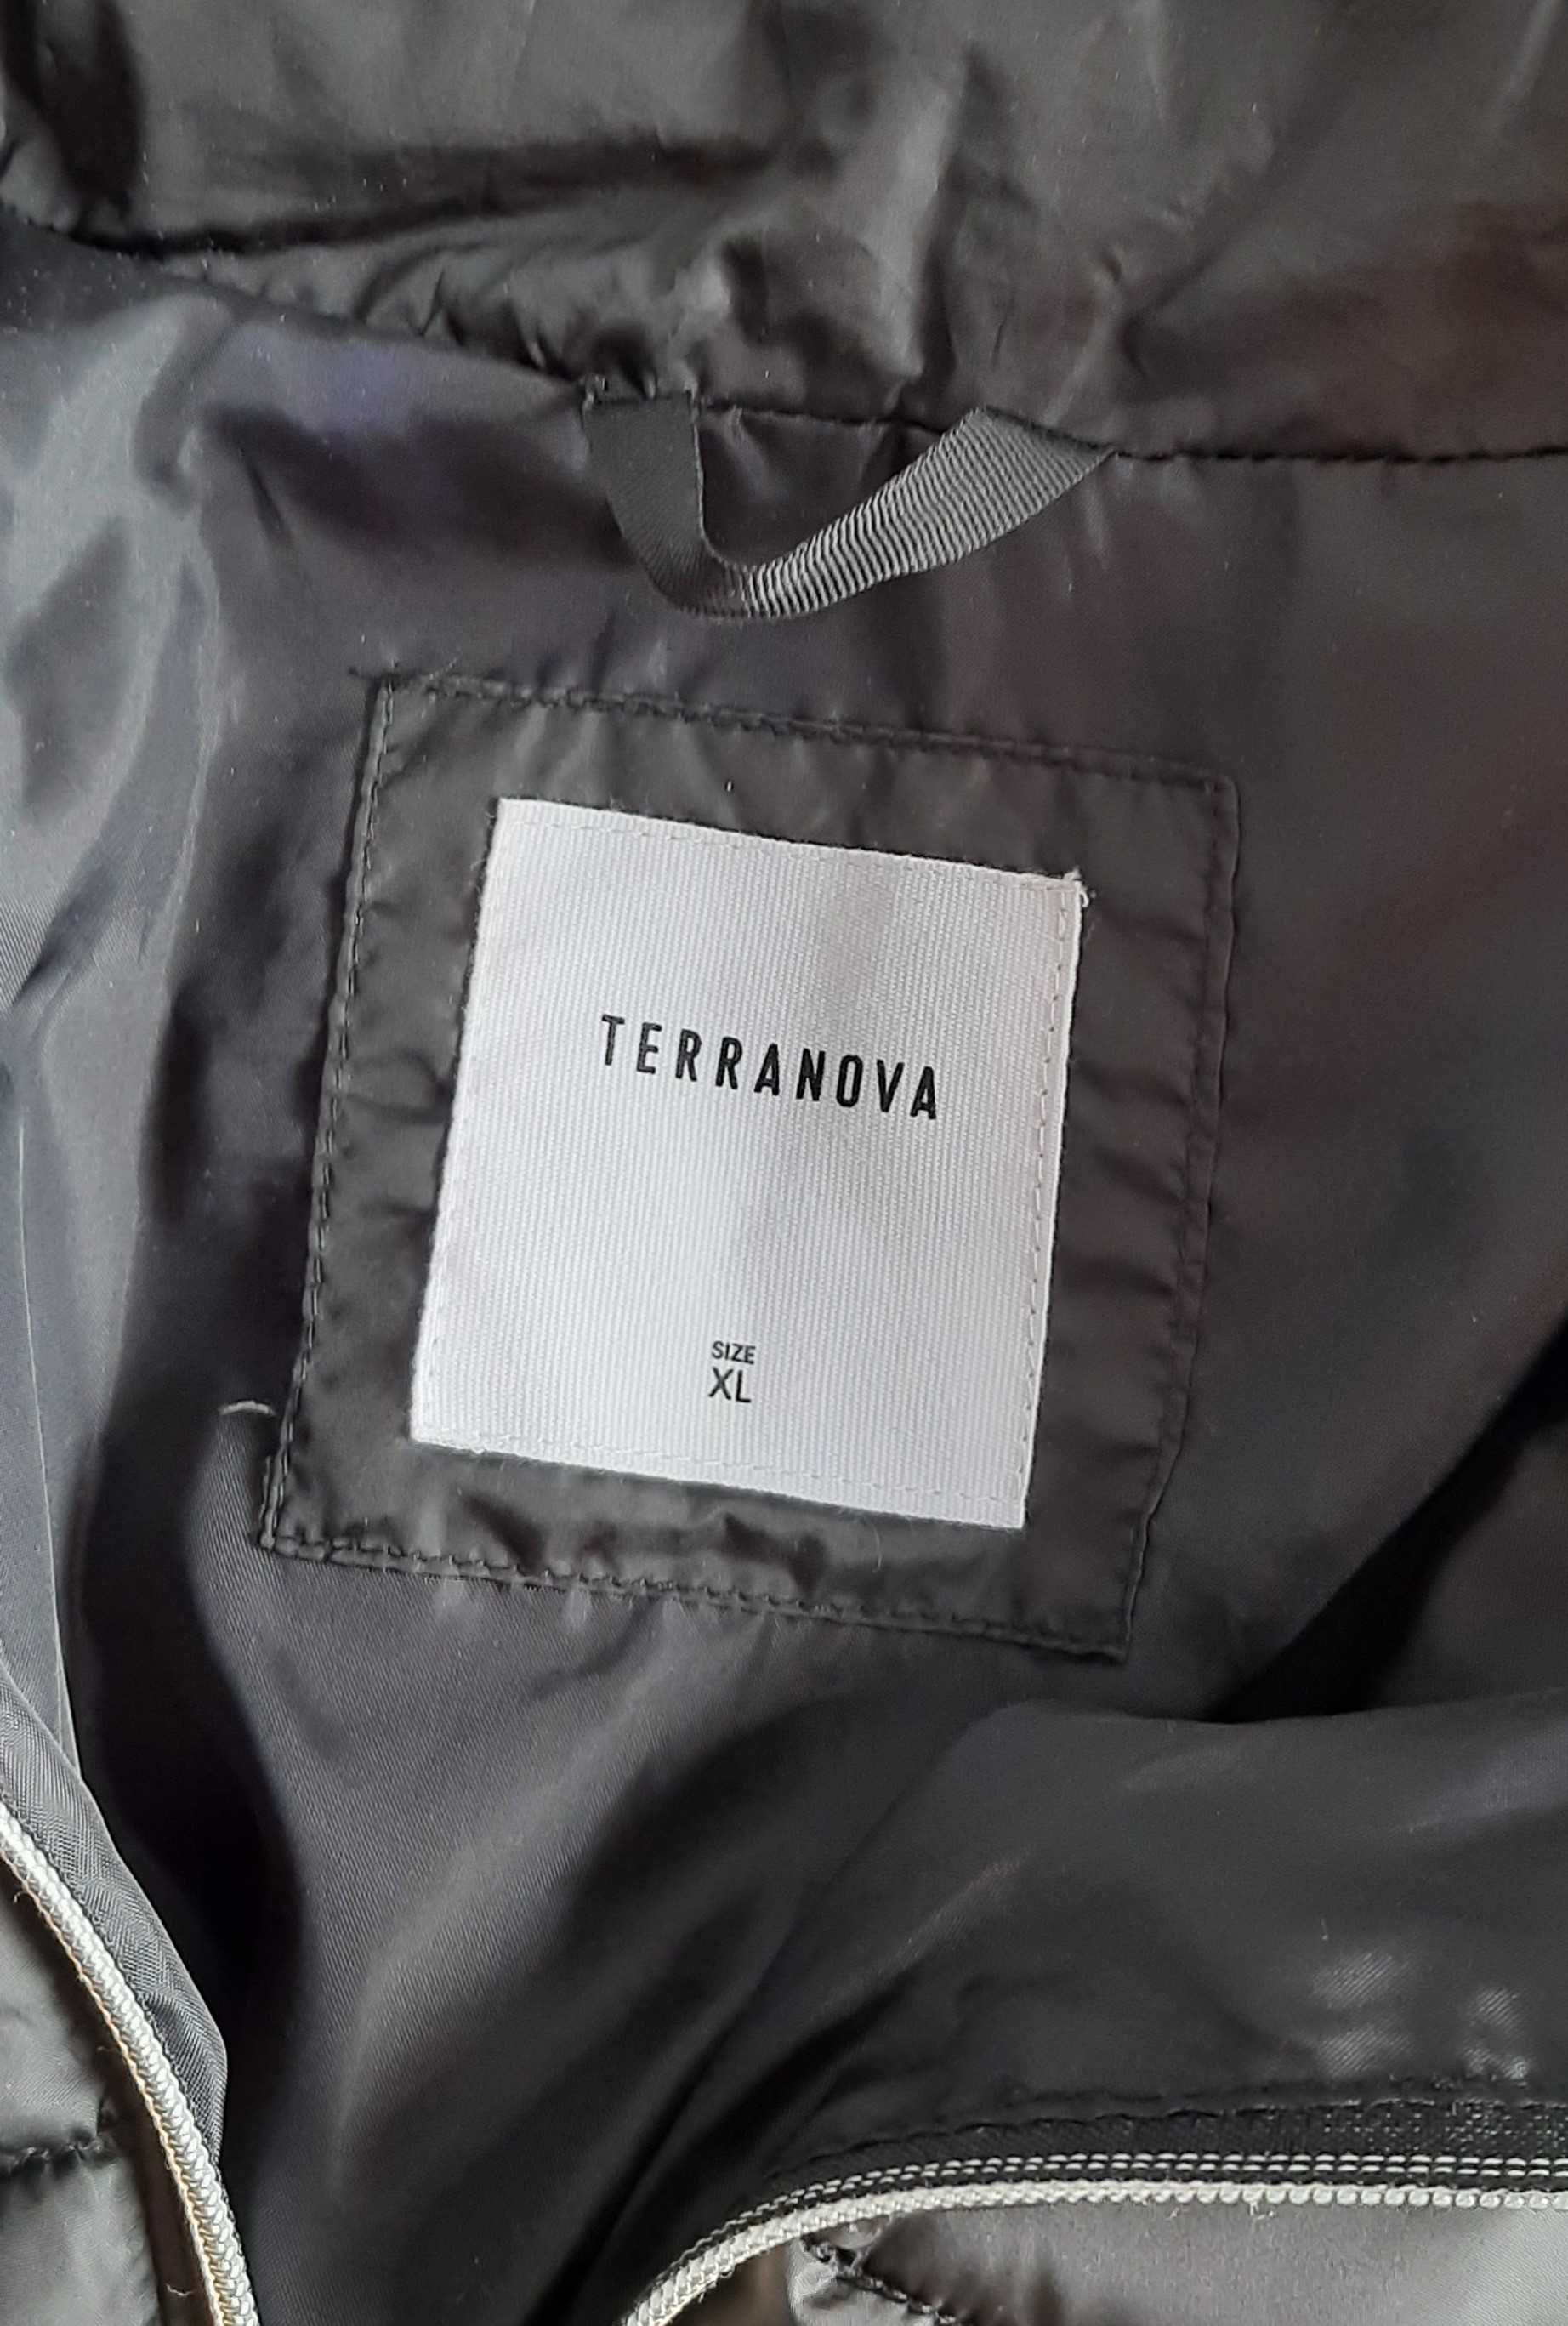 Czarna kurtka pikowana damska na zamek Terranova XL